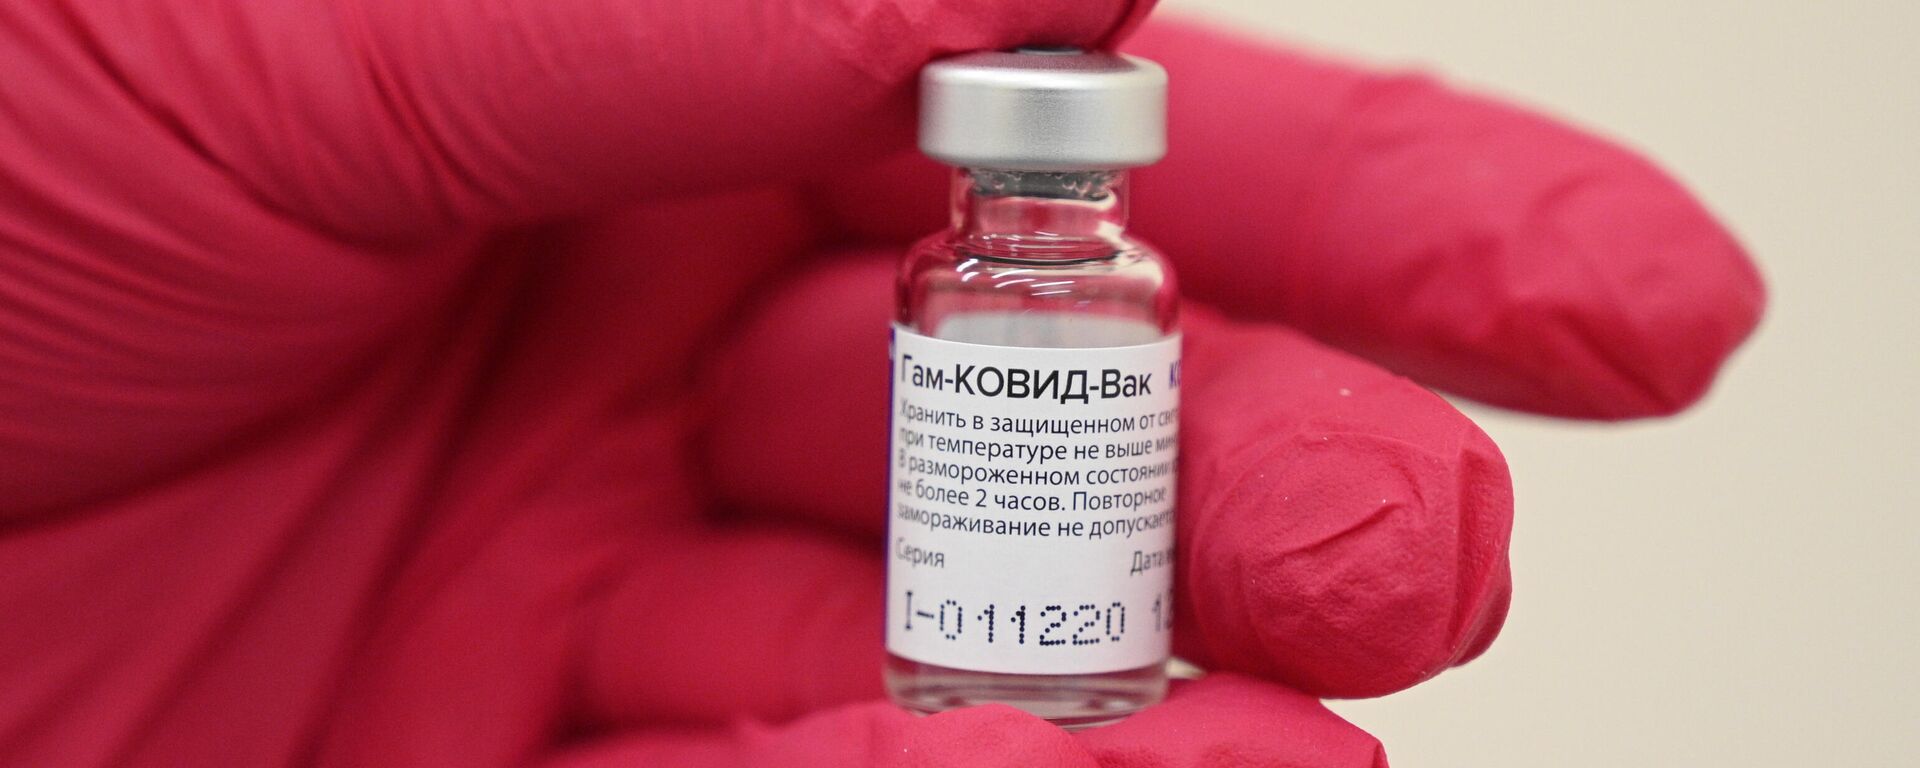 Новый пункт вакцинации от COVID-19  в ТЦ Тройка - Sputnik Узбекистан, 1920, 12.03.2021